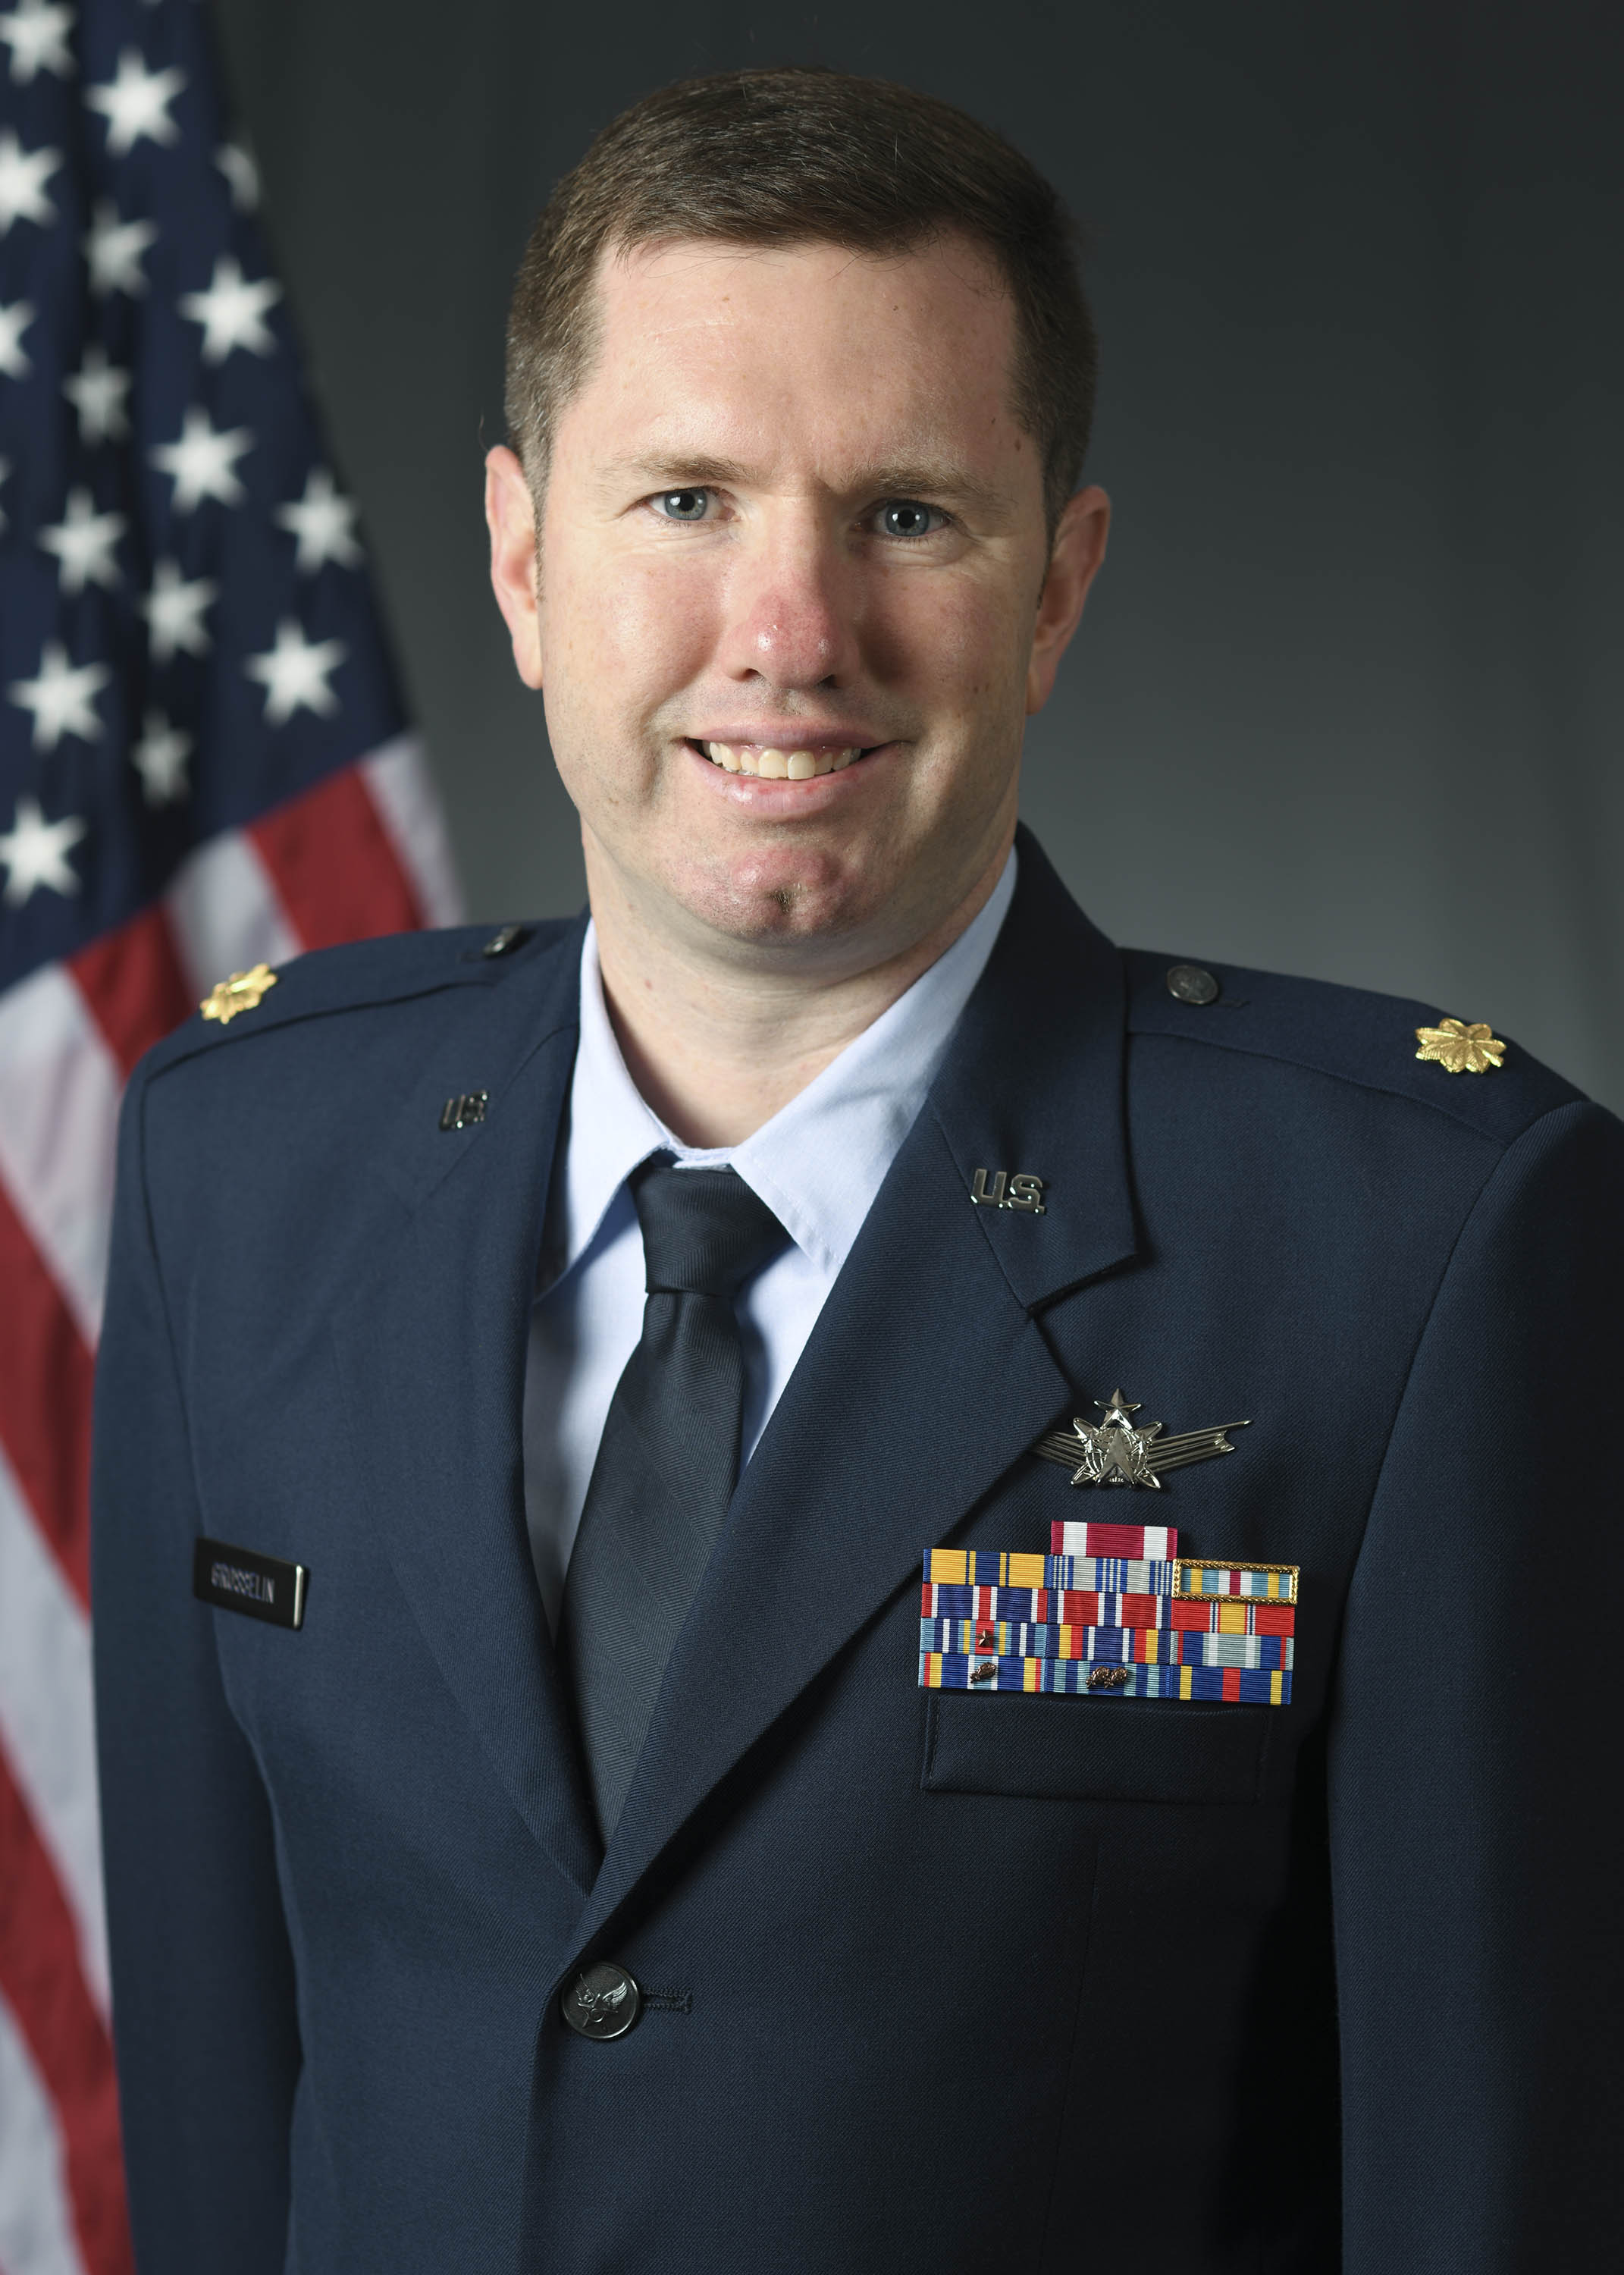 Photo of Maj Kenneth Grosselin, USAF in service dress